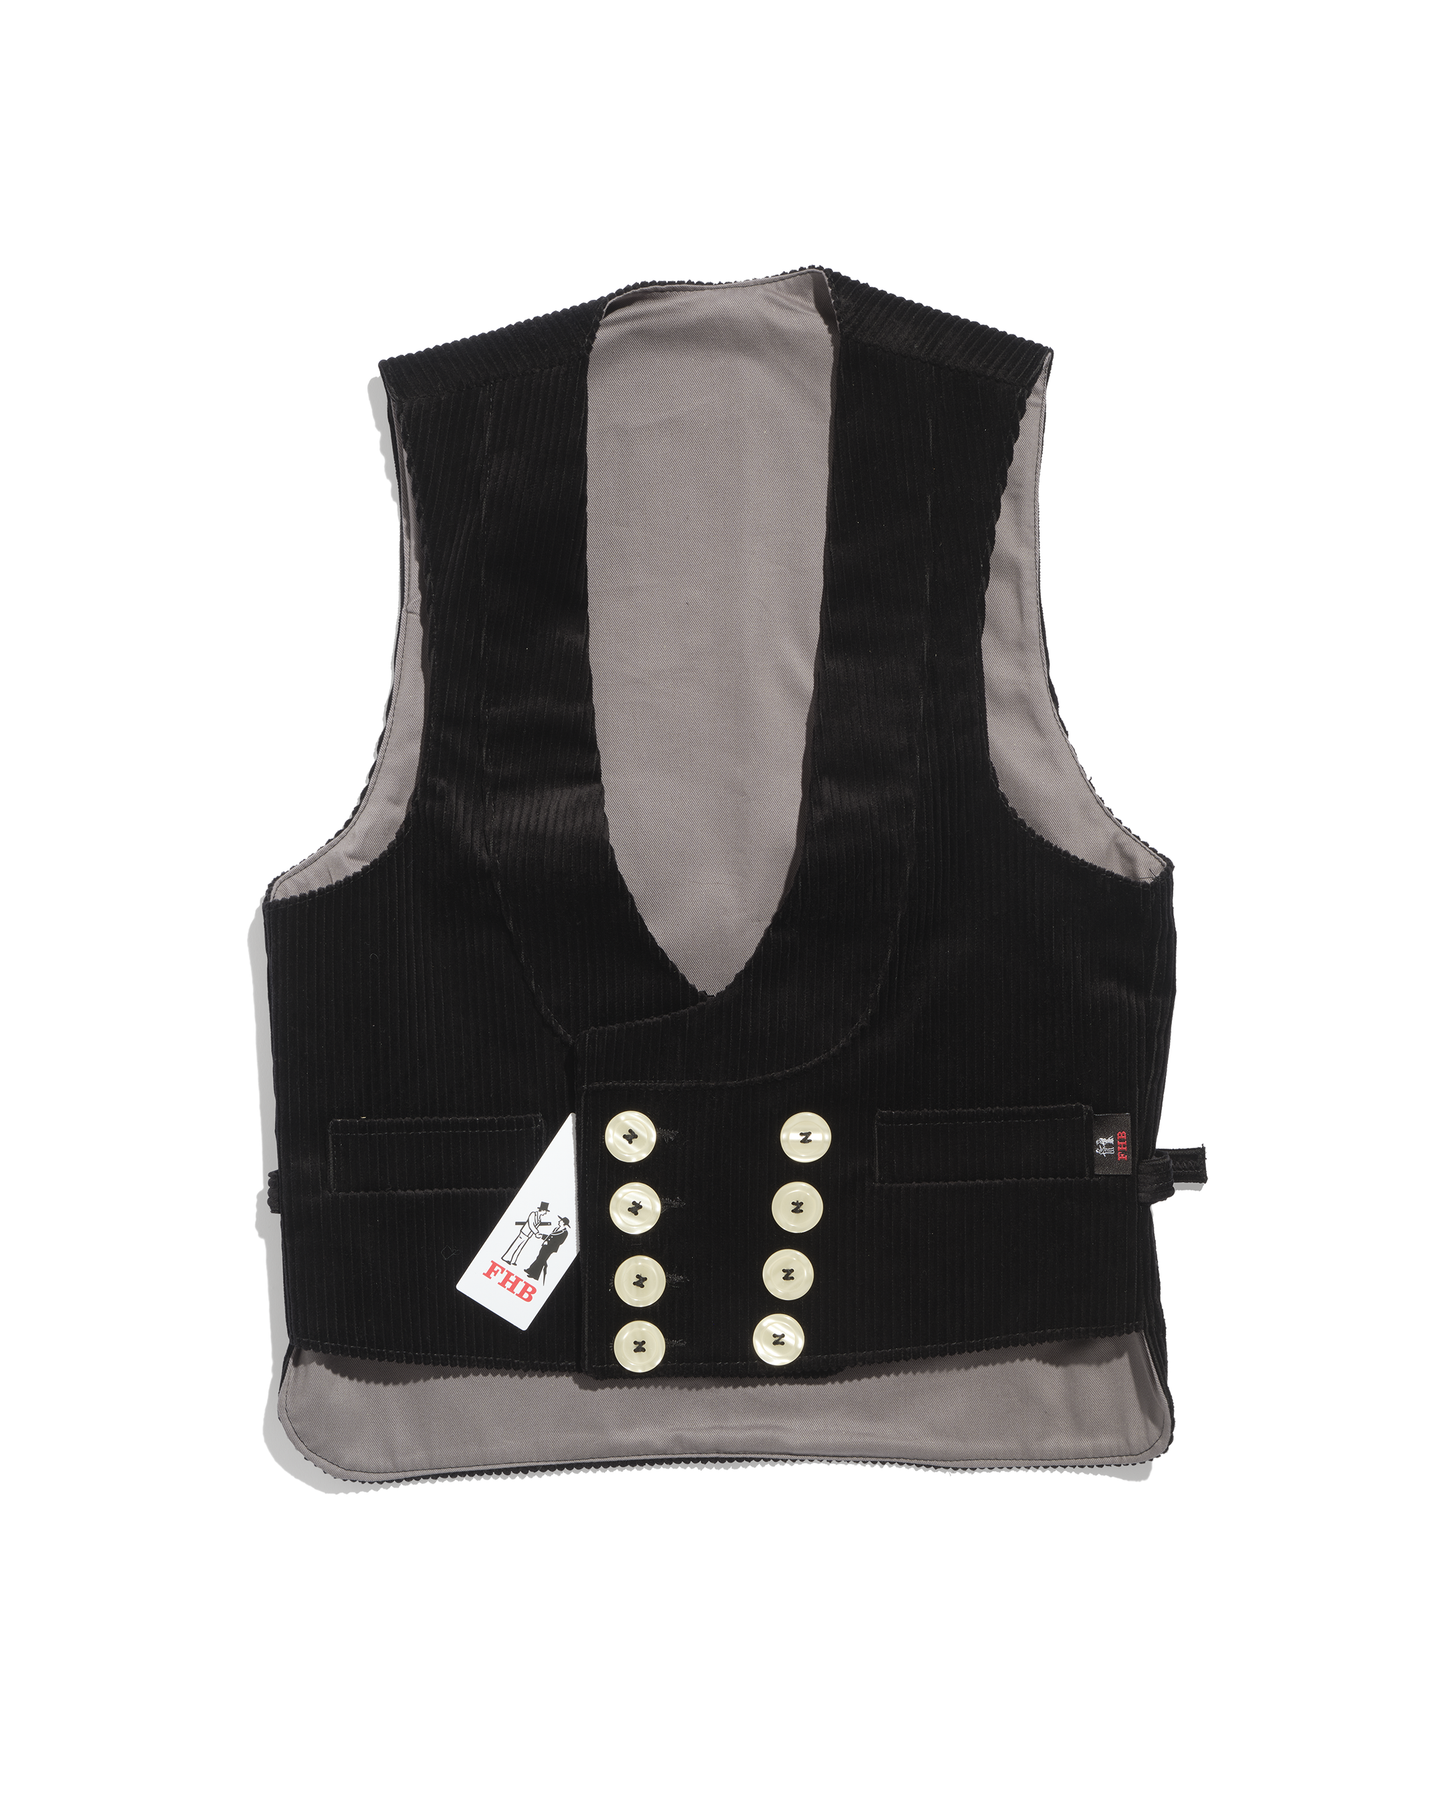 German black rush velvet corporate vest